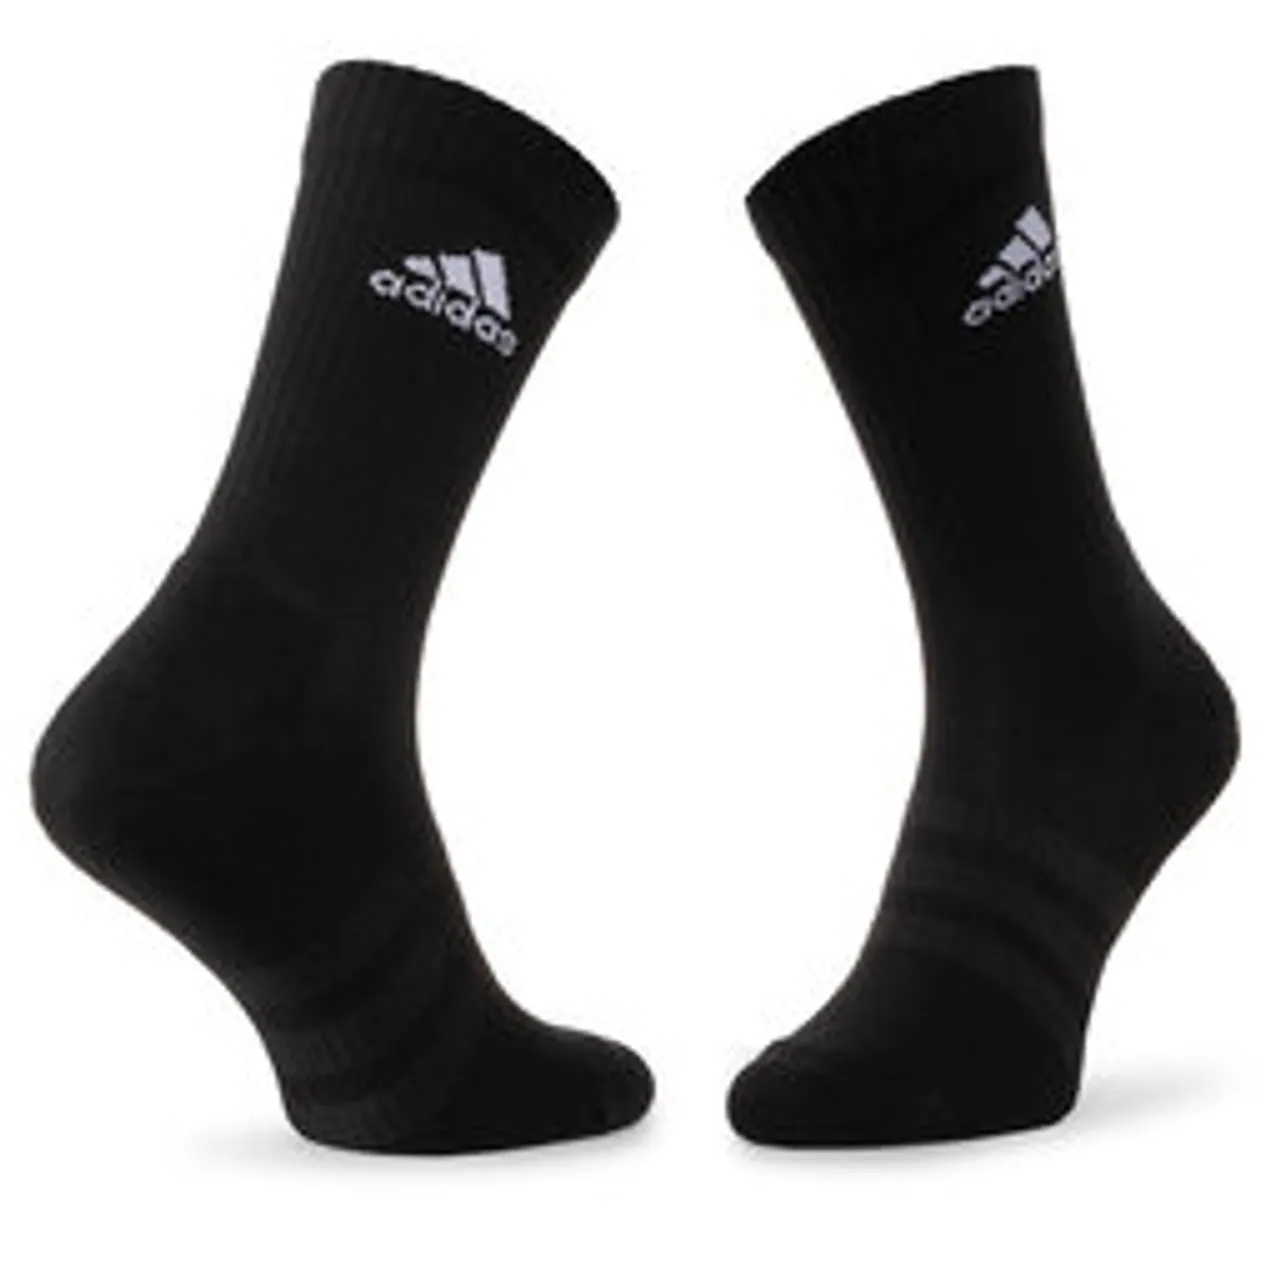 3er-Set hohe Unisex-Socken adidas Cush Crw 3Pp DZ9357 Black/Black/White